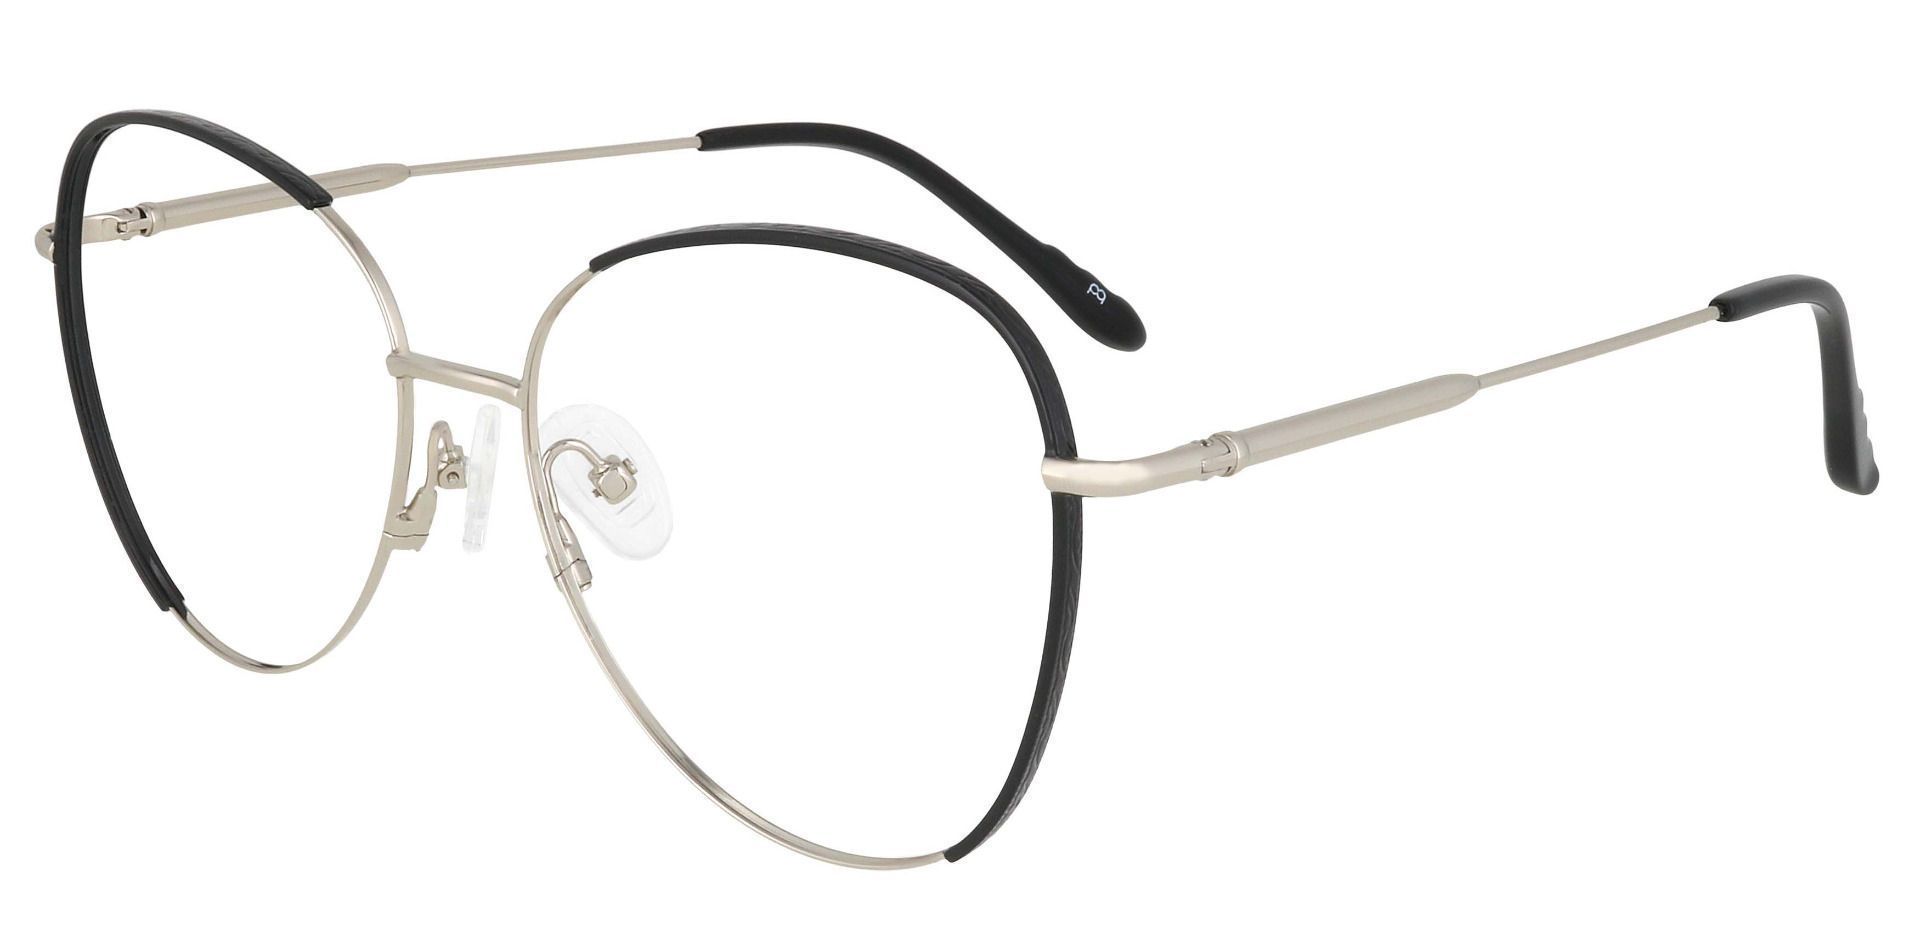 Pippi Cat Eye Prescription Glasses - Black | Women's Eyeglasses | Payne ...